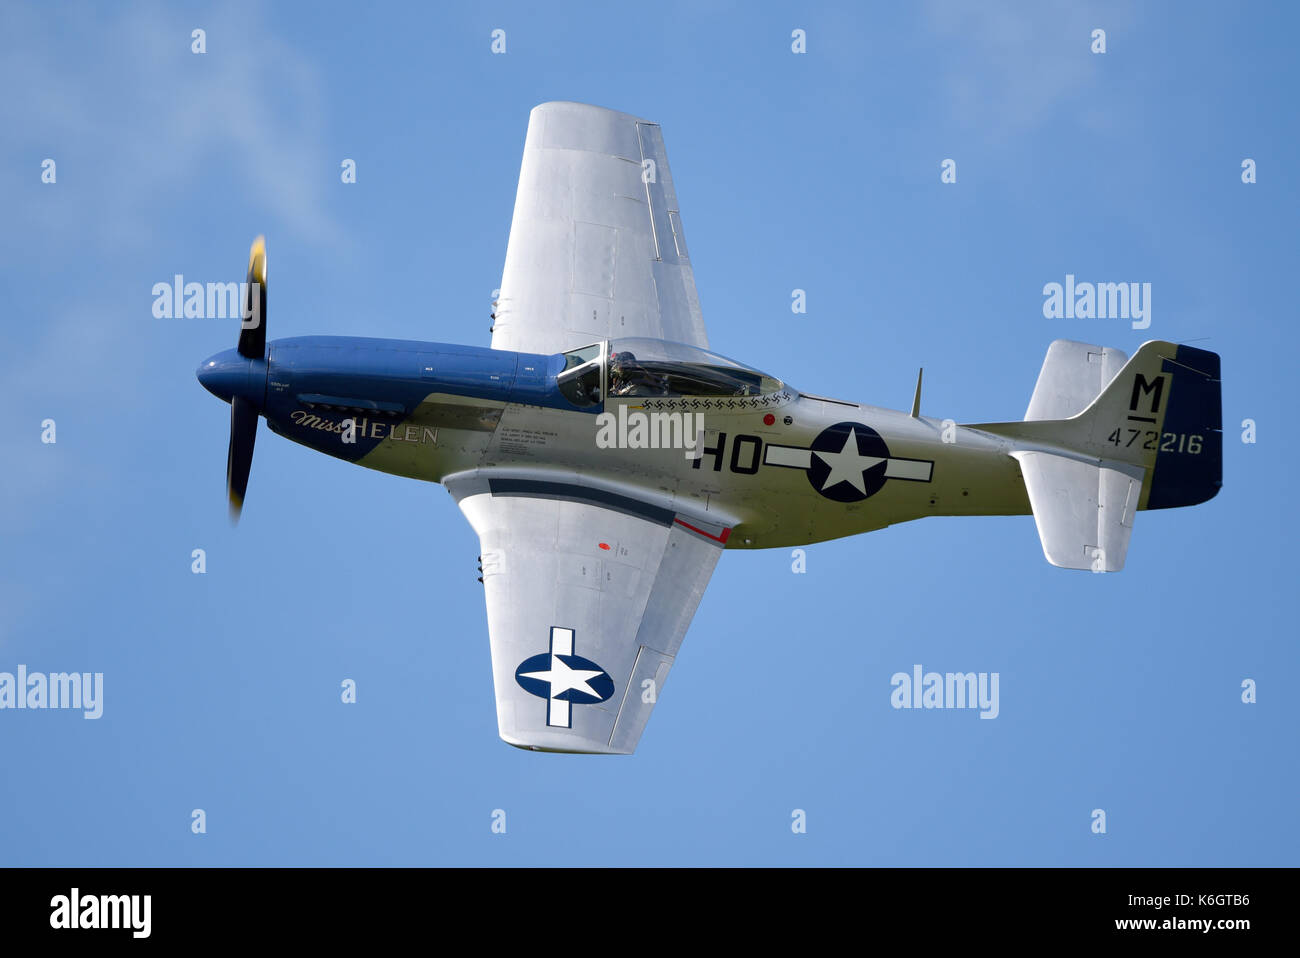 El avión de combate norteamericano P-51 Mustang Miss Helen de la Segunda Guerra Mundial volando en el Goodwood Revival 2017 Foto de stock